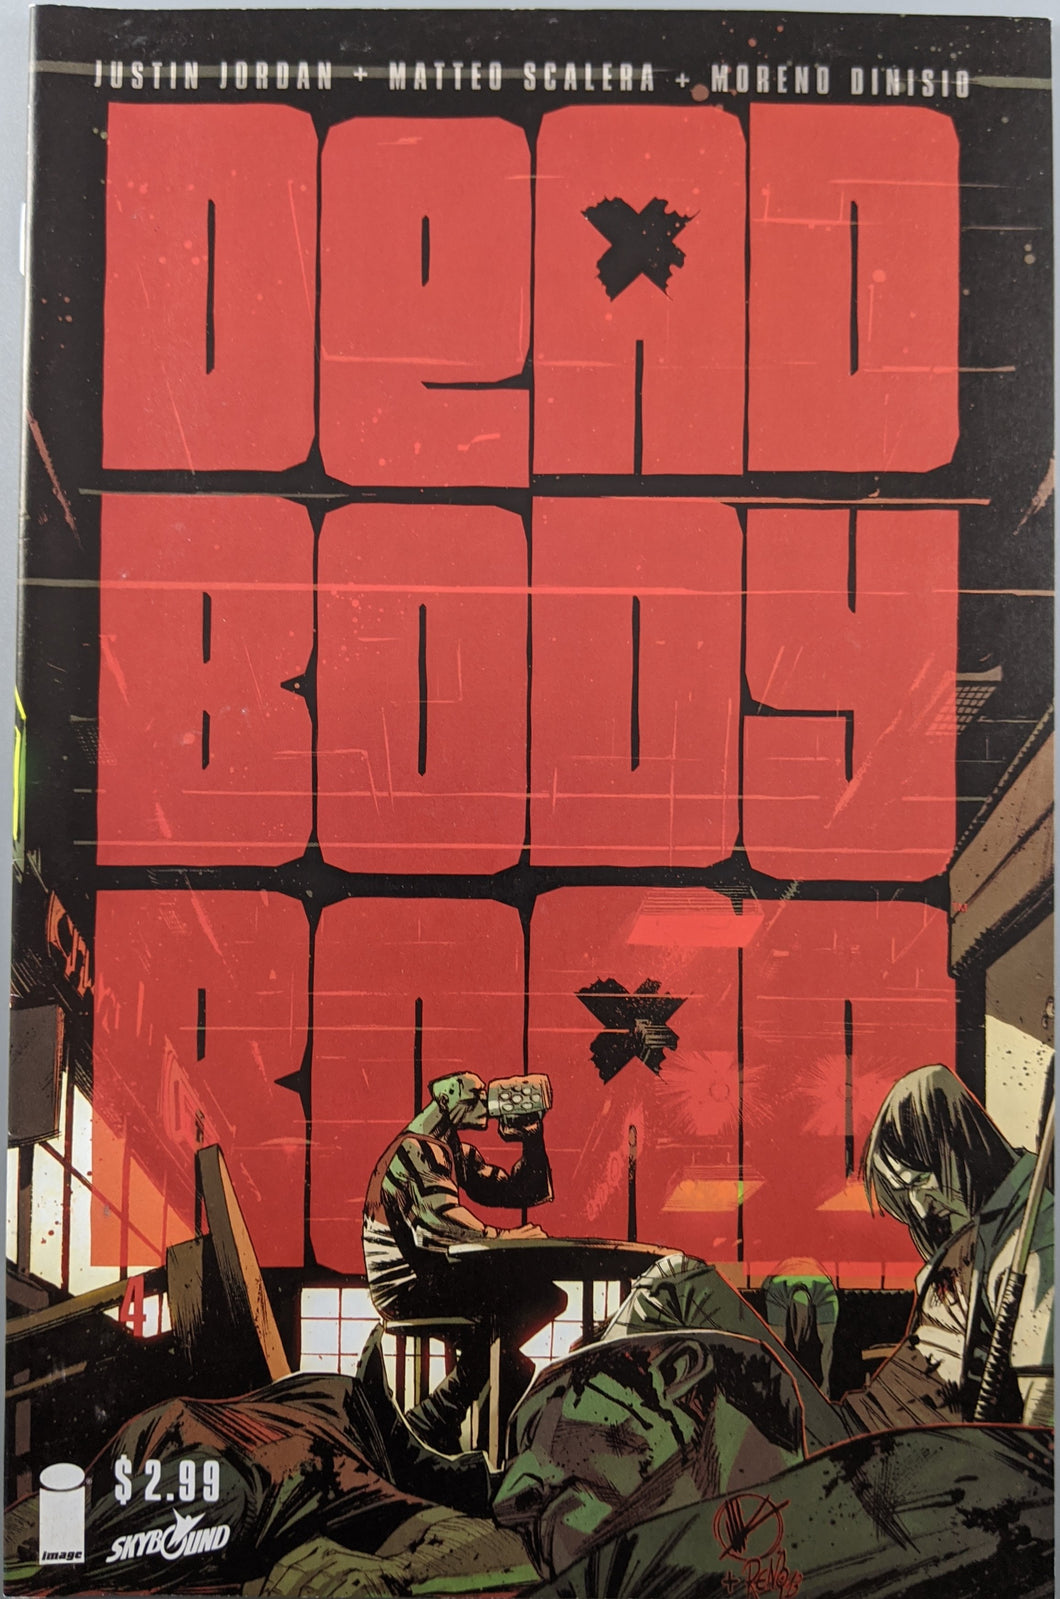 Dead Body Road (2013) #4